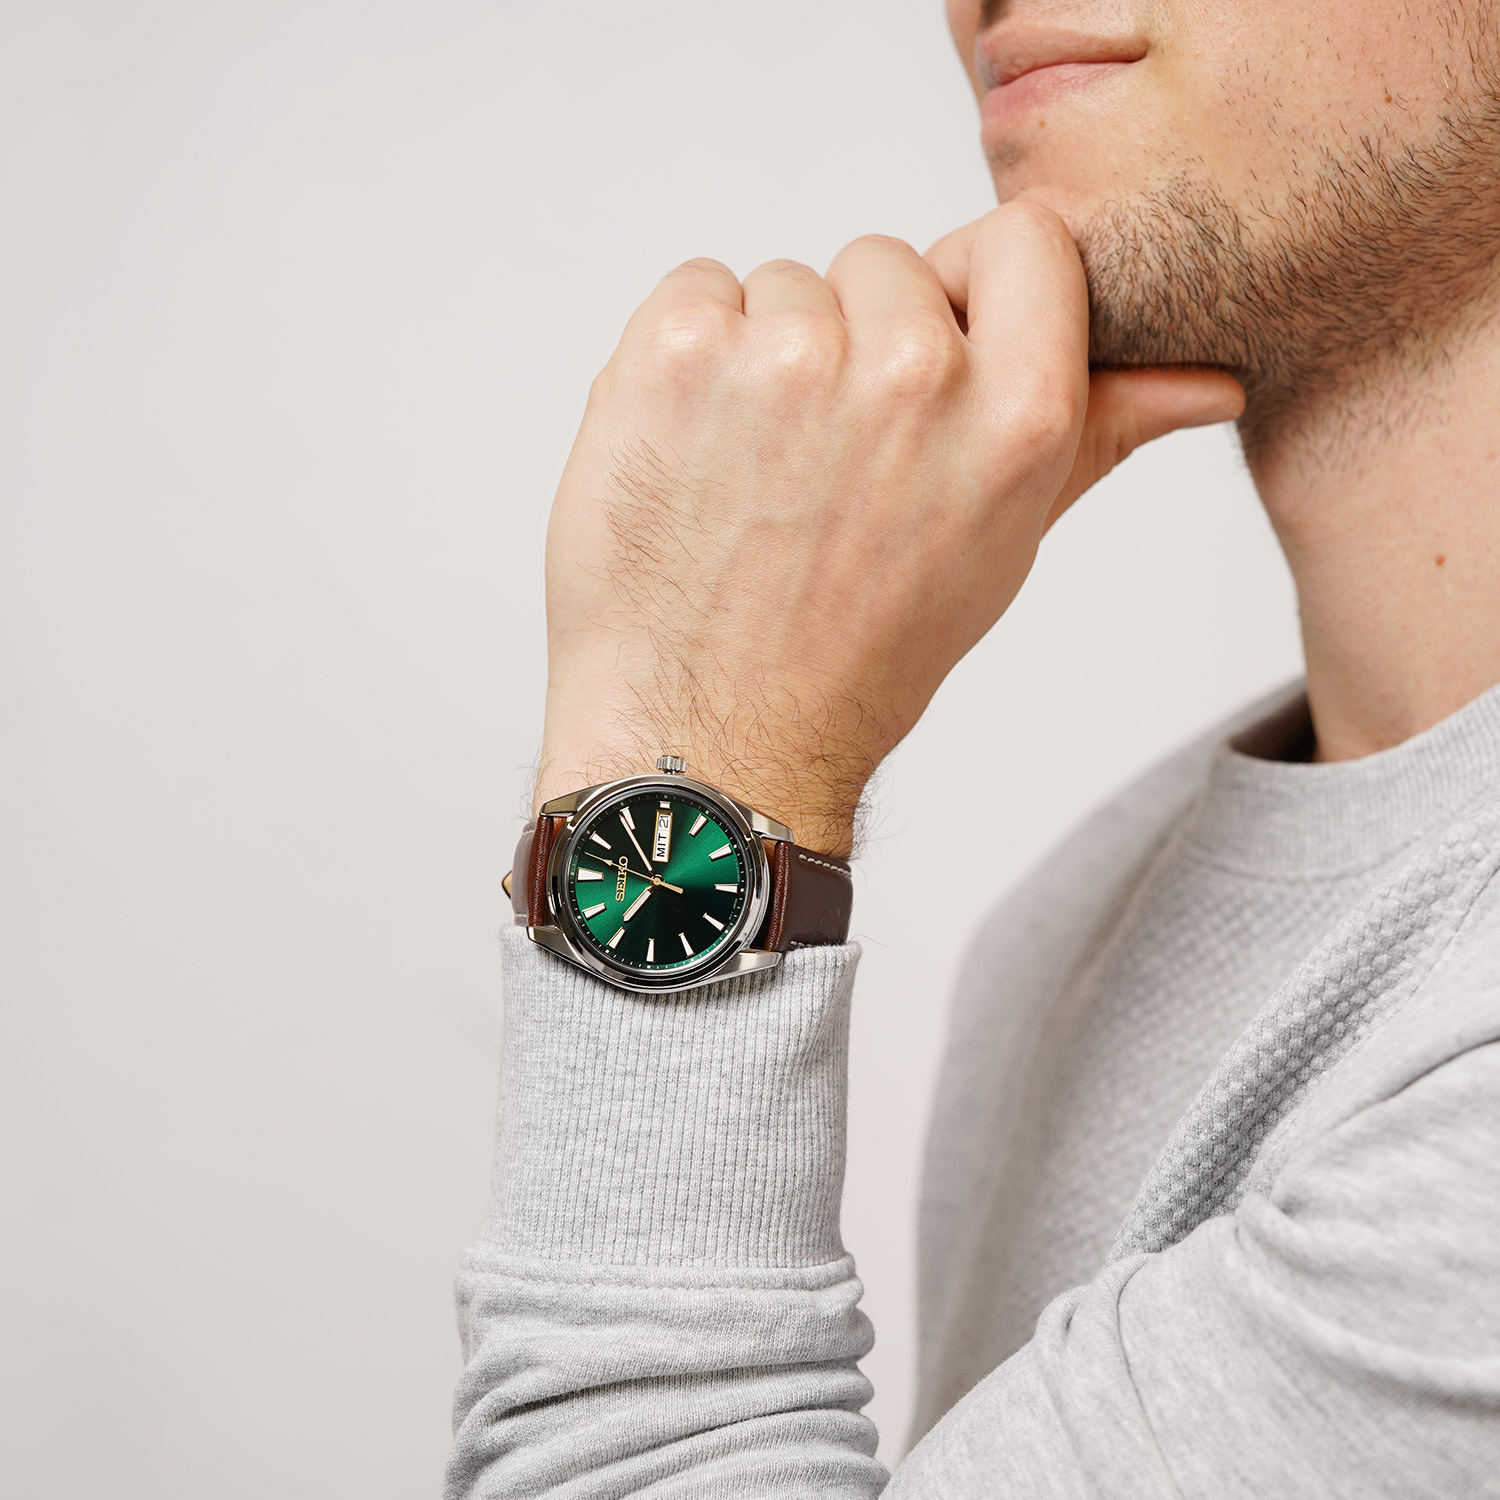 Seiko Herren-Armbanduhr mit Saphirglas Braun/Grün SUR449P1 • uhrcenter